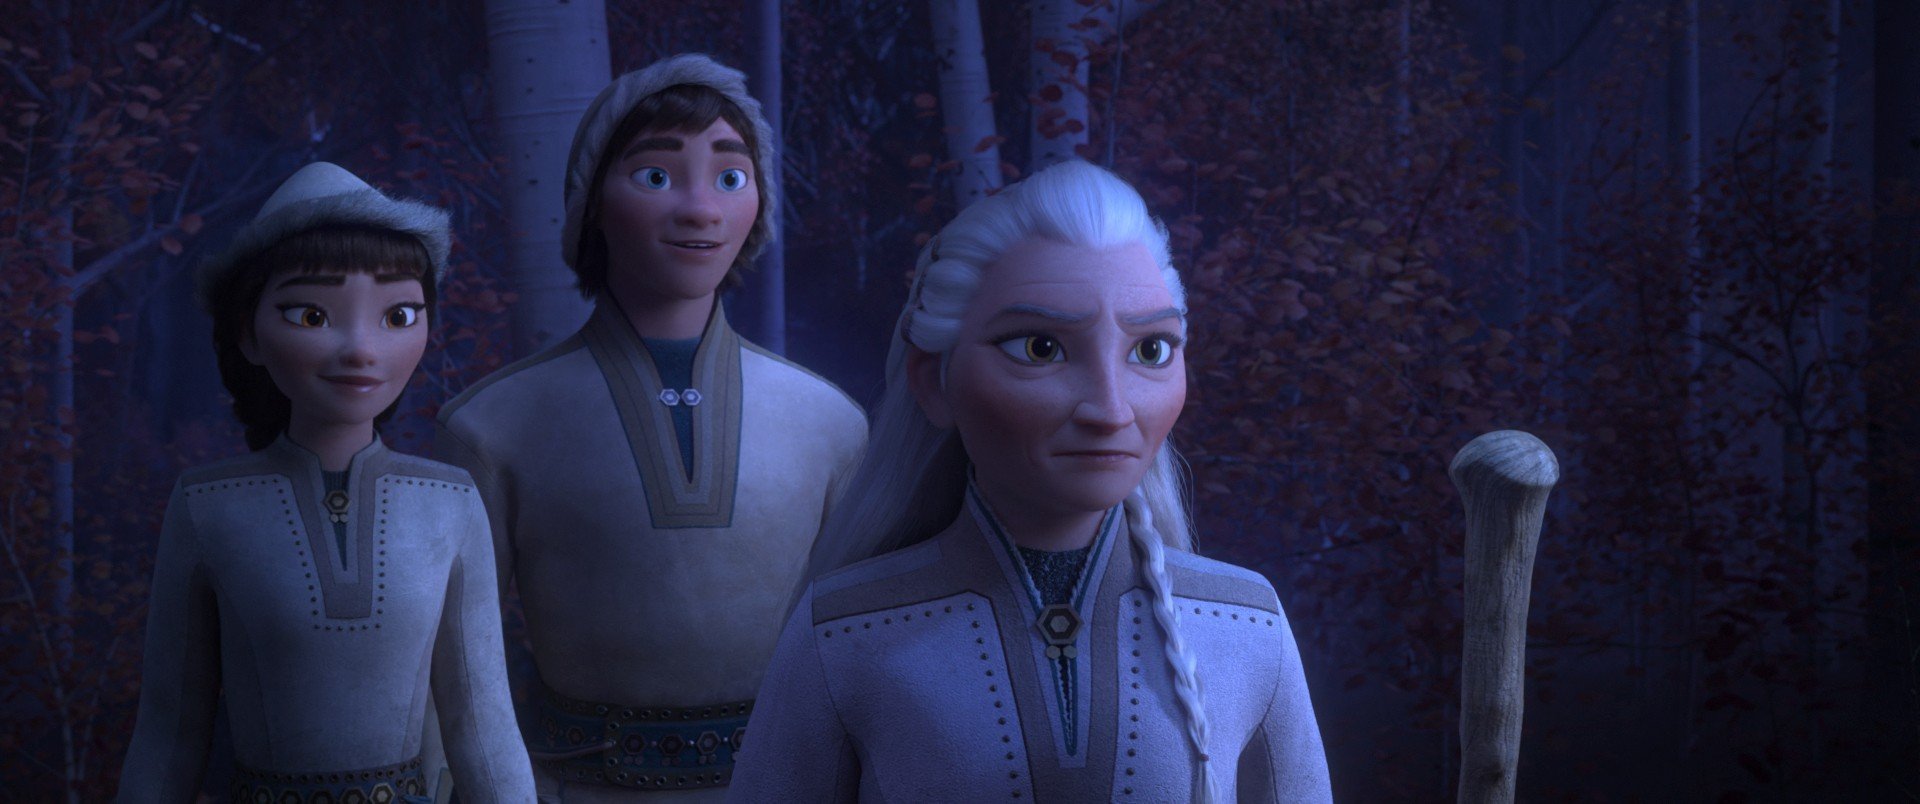 Honeymaren, Ryder and Yelana from Walt Disney Pictures' Frozen II (2019)